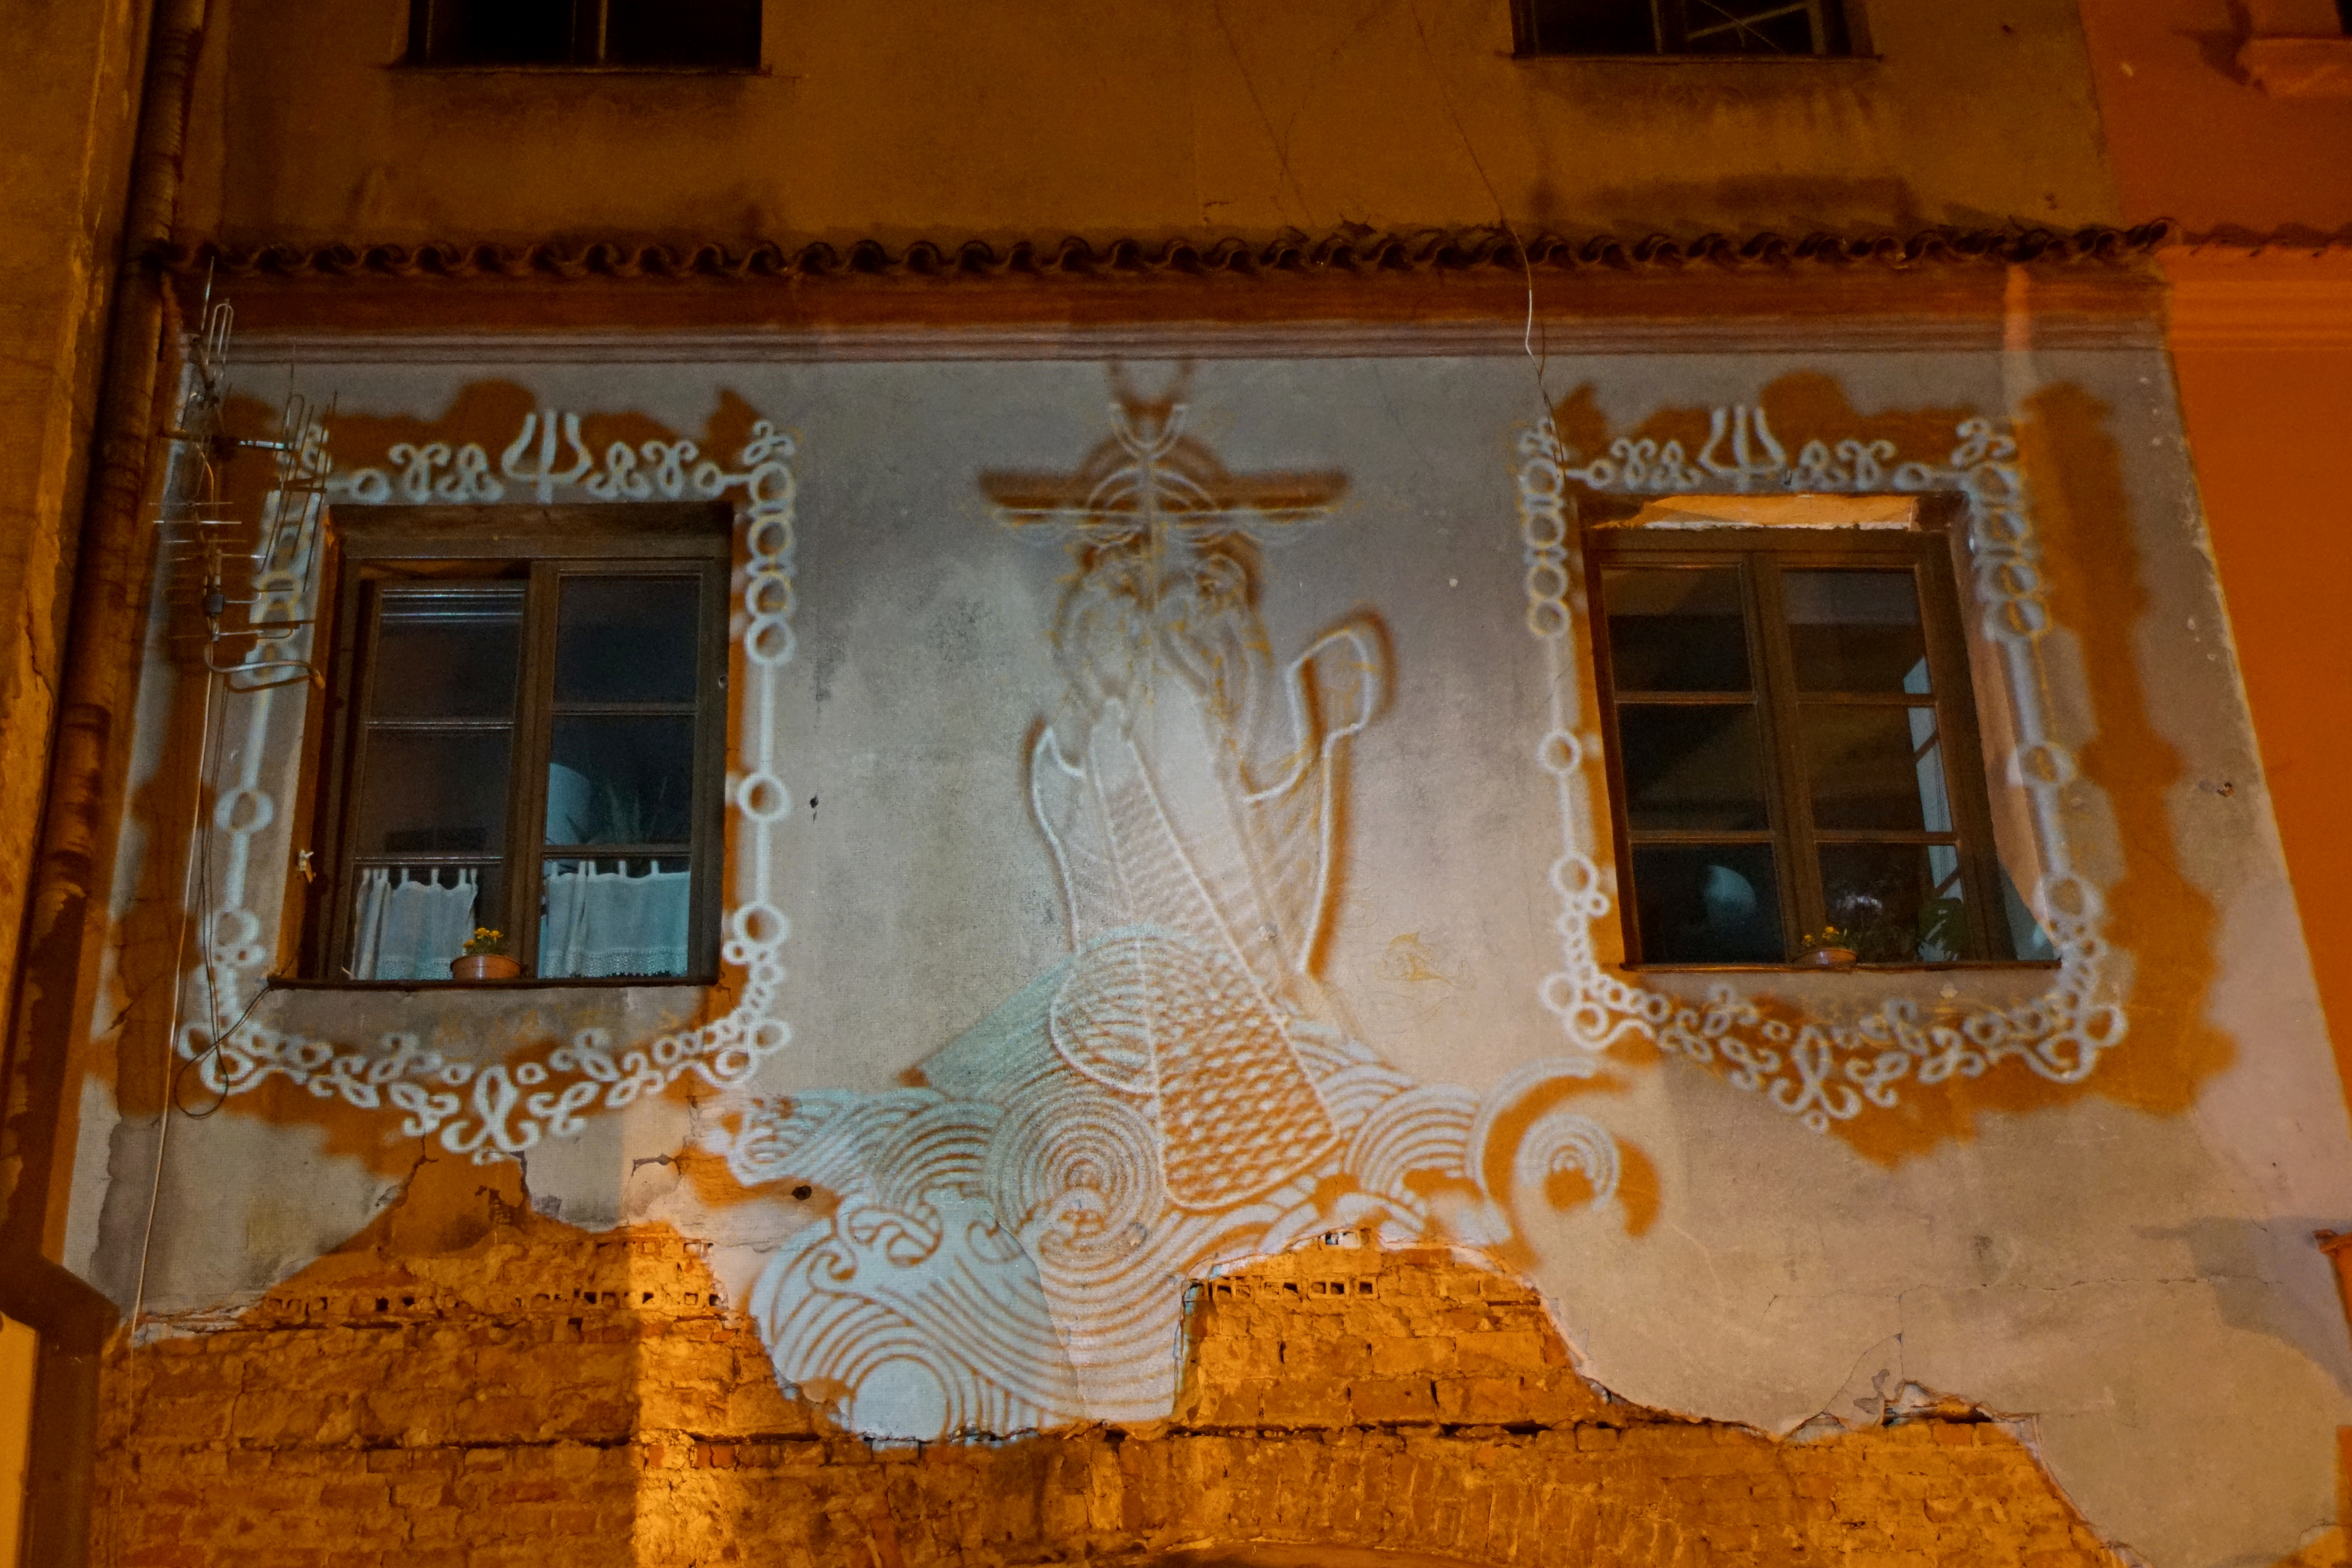 Noc Kultury w Lublinie powoli się rozpędza. Pojawiły się kolejne instalacje na Starym Mieście (zdjęcia)